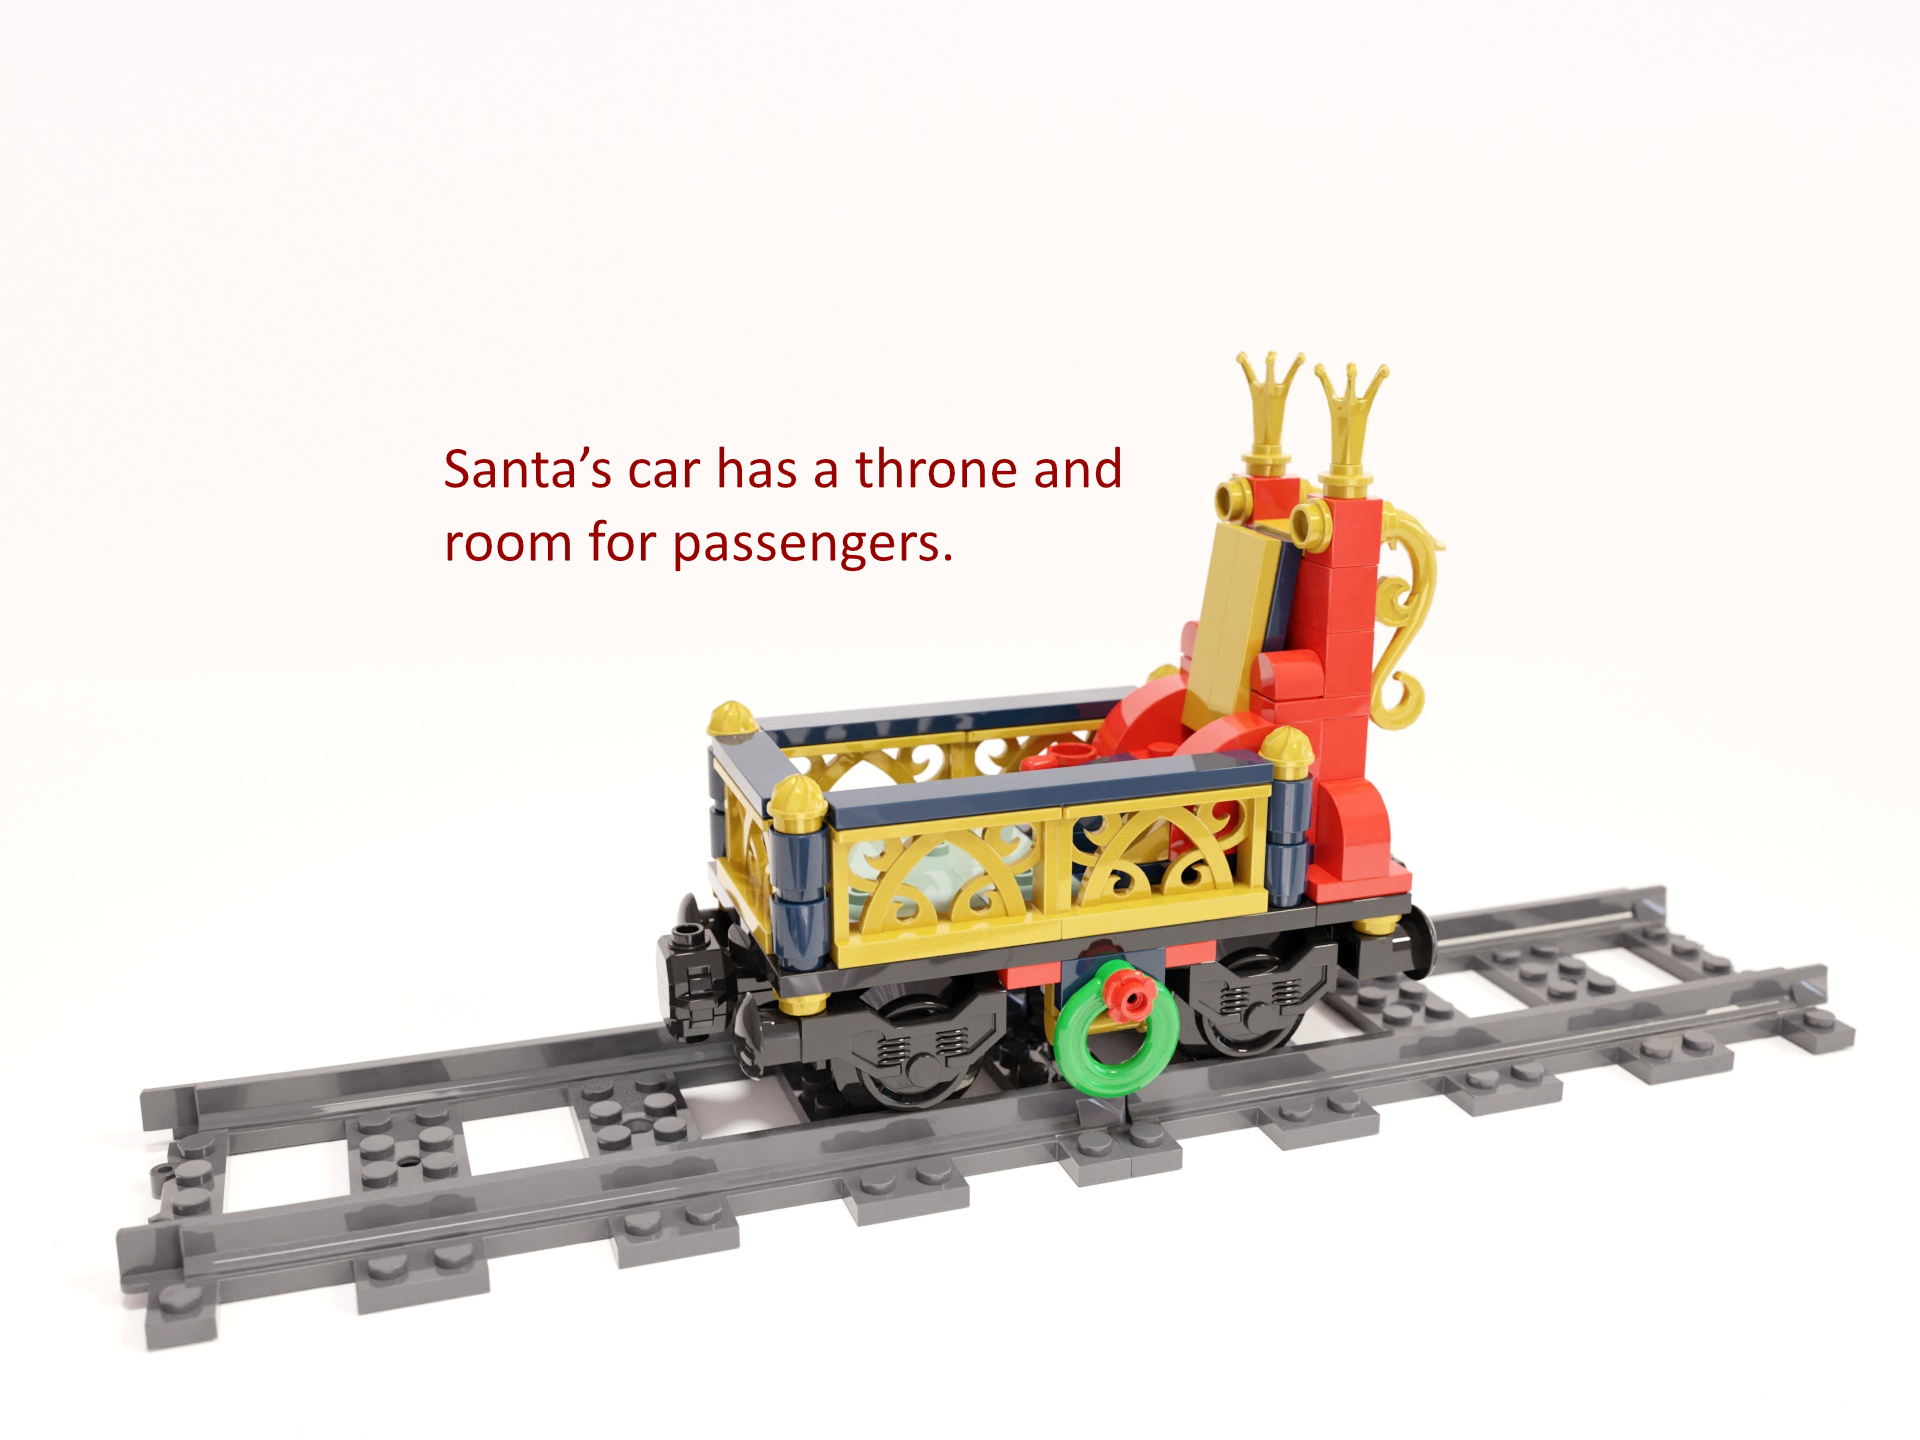 Bild 4: Der Wagen des Weihnachtsmanns hat einen Thron und Platz für Passagiere